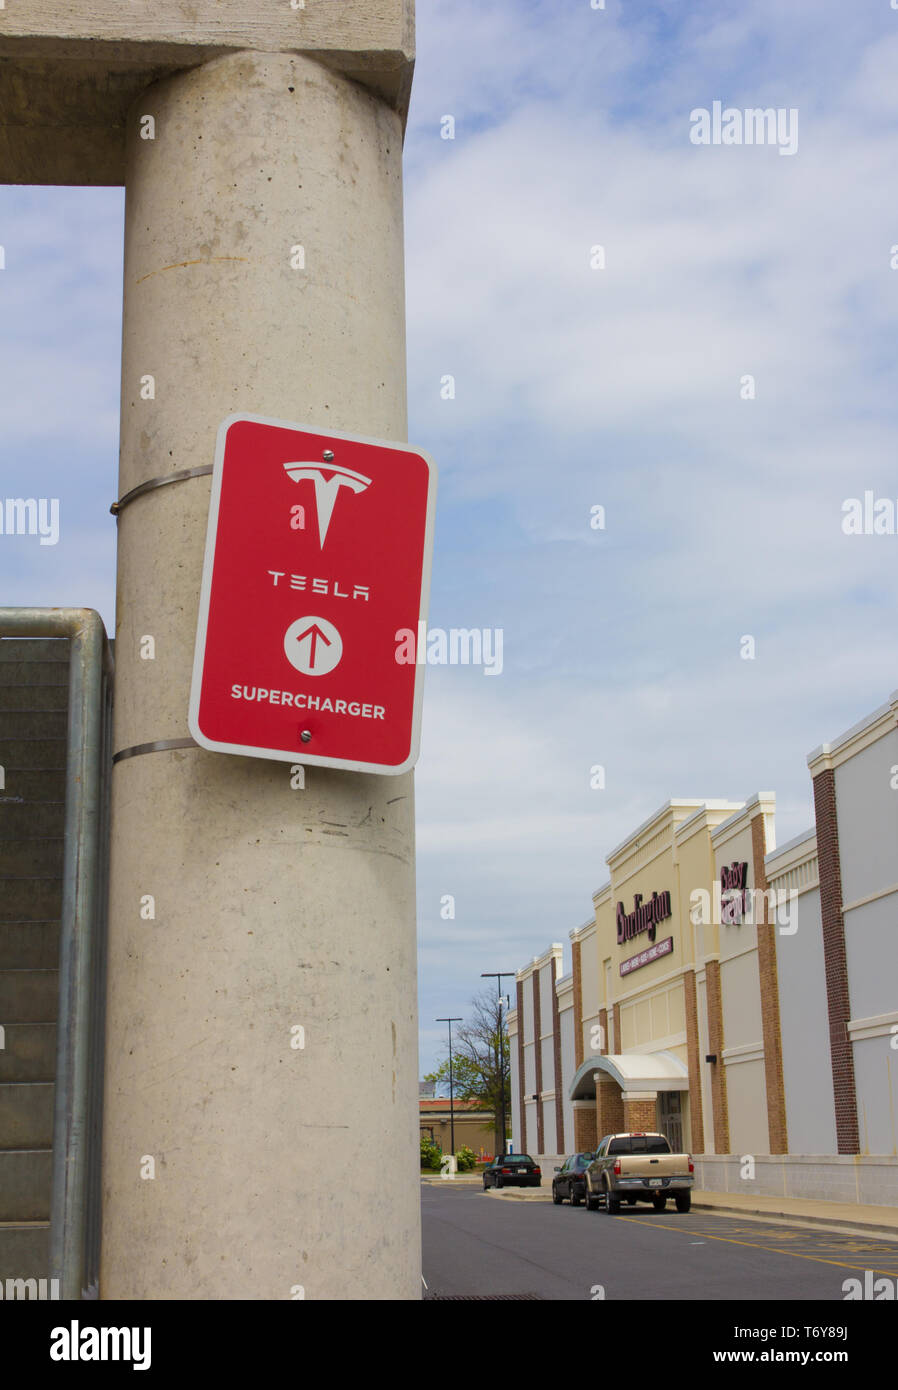 Im Mai 2019 wurde angekündigt, dass Tesla, Inc. co-Gründer/CEO Elon Musk war einer der Gewinner des 2019 Stephen Hawking Medaille für Wissenschaftskommunikation. Dargestellt im April 2019, in vertikaler Ausrichtung und mit verschiedenen Geschäften im Hintergrund Towne Center am Lorbeer Einkaufszentrum/Mitte in Laurel, Maryland, USA, ein rotes 'Tesla Kompressor' Schild mit Logo auf einem der Pfeiler der Tiefgarage/Parkhaus, wo Ladestationen für die Kalifornien zur Verfügung stehen - die Basis Automotive Company Elektrofahrzeuge. Mai 2019, Tesla hatte mehr als 1.440 Kompressor Stationen weltweit. Stockfoto